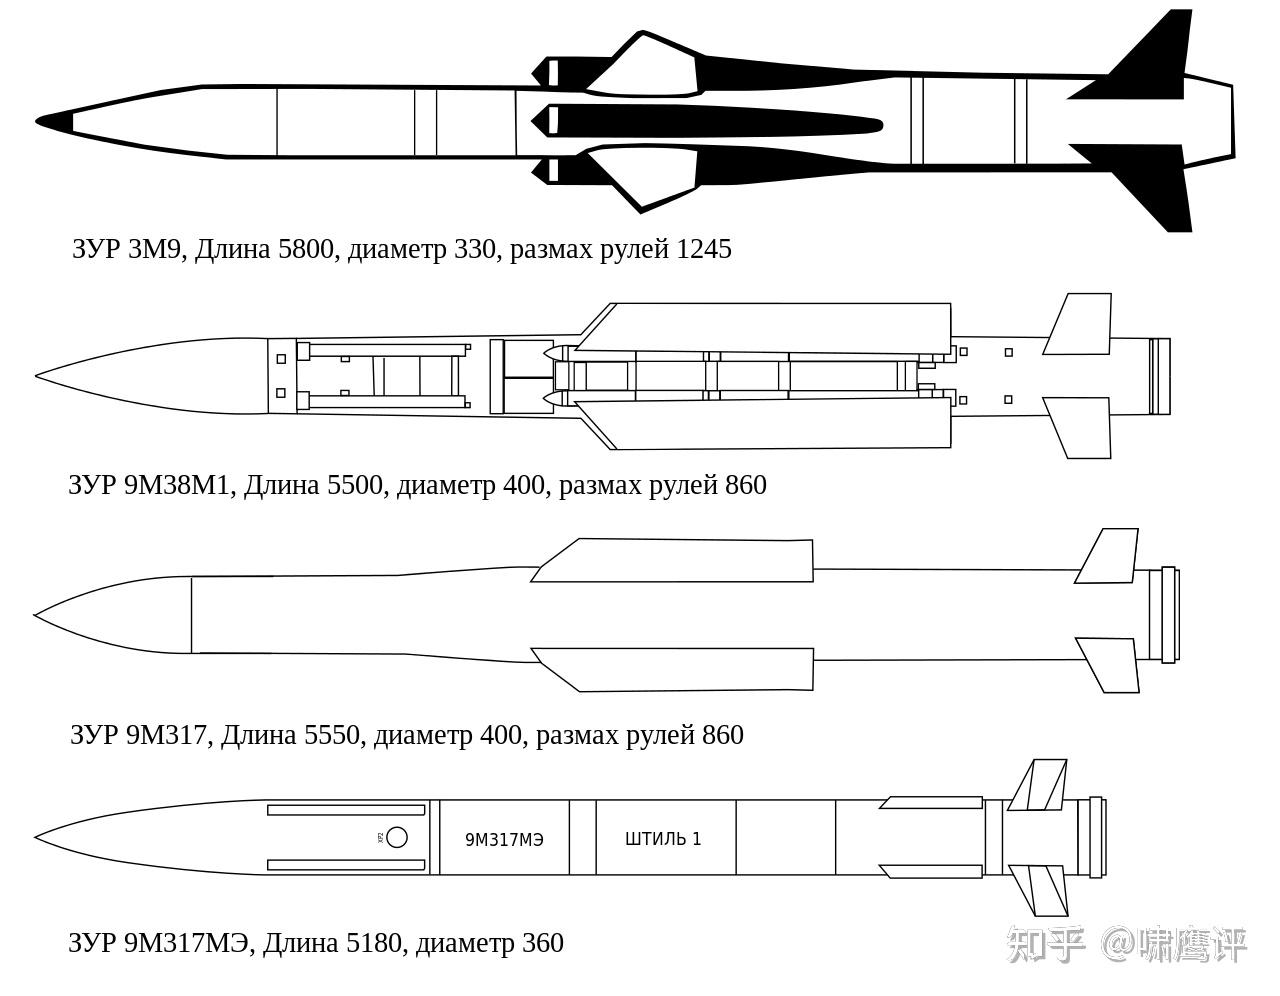 俄版054a没了乌海王星导弹疑似击沉黑海舰队最强舰马卡洛夫号